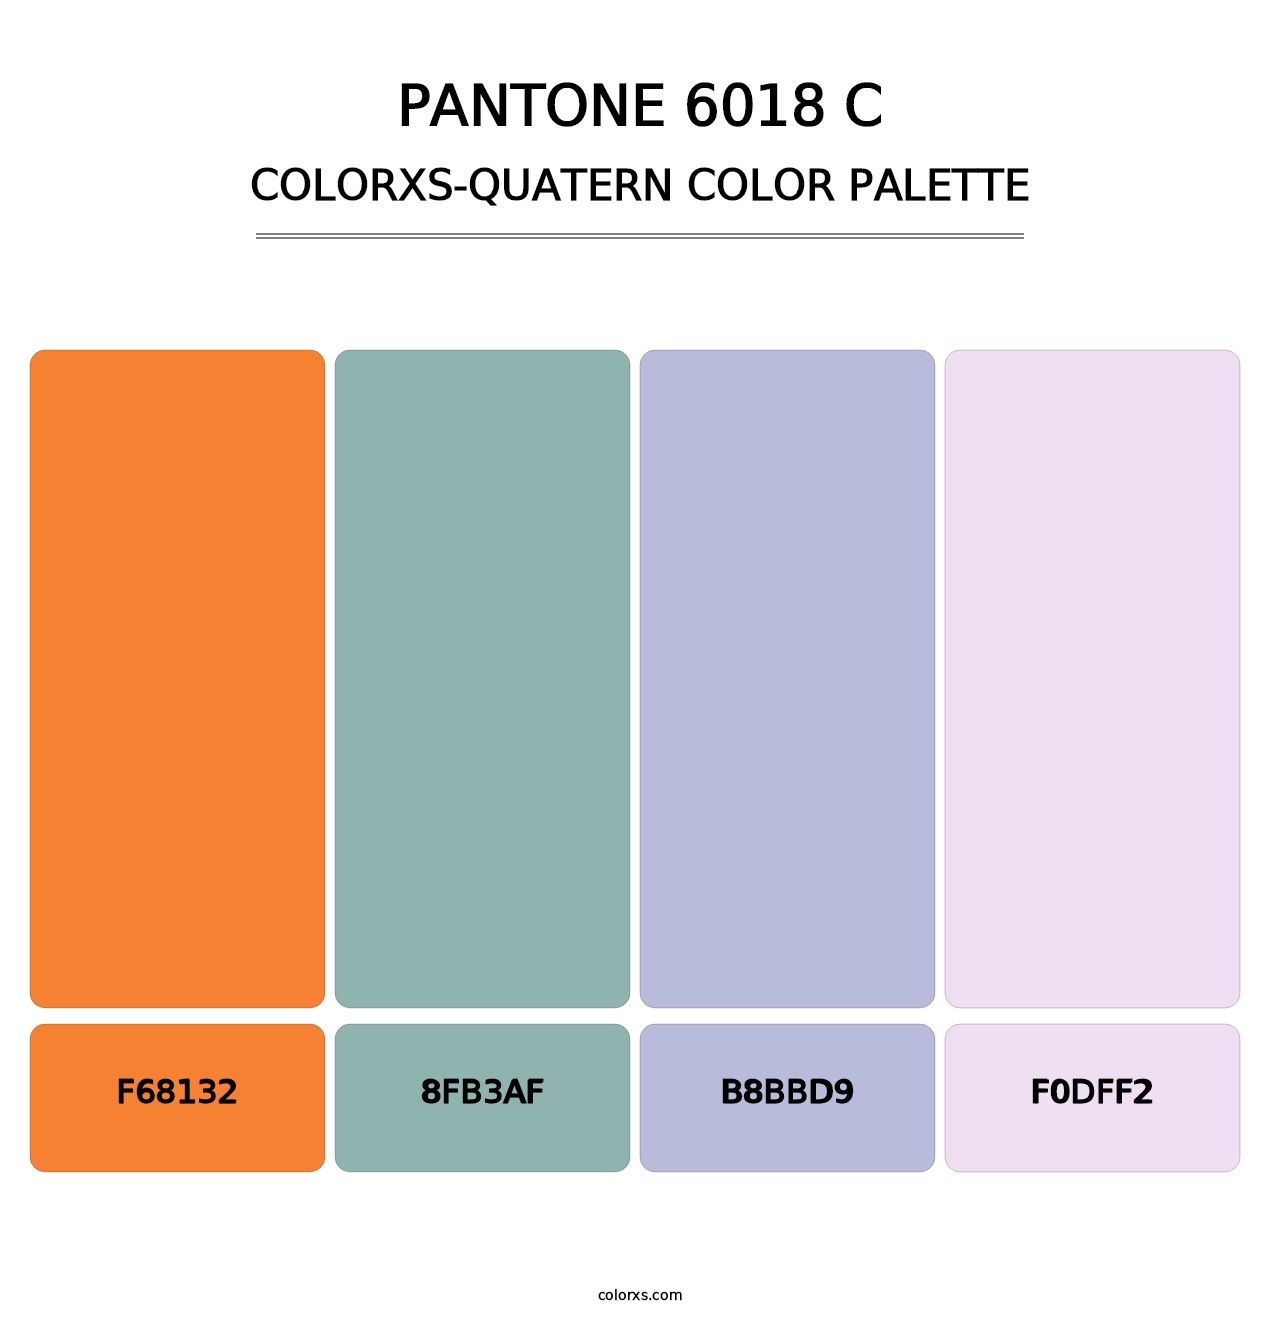 PANTONE 6018 C - Colorxs Quatern Palette